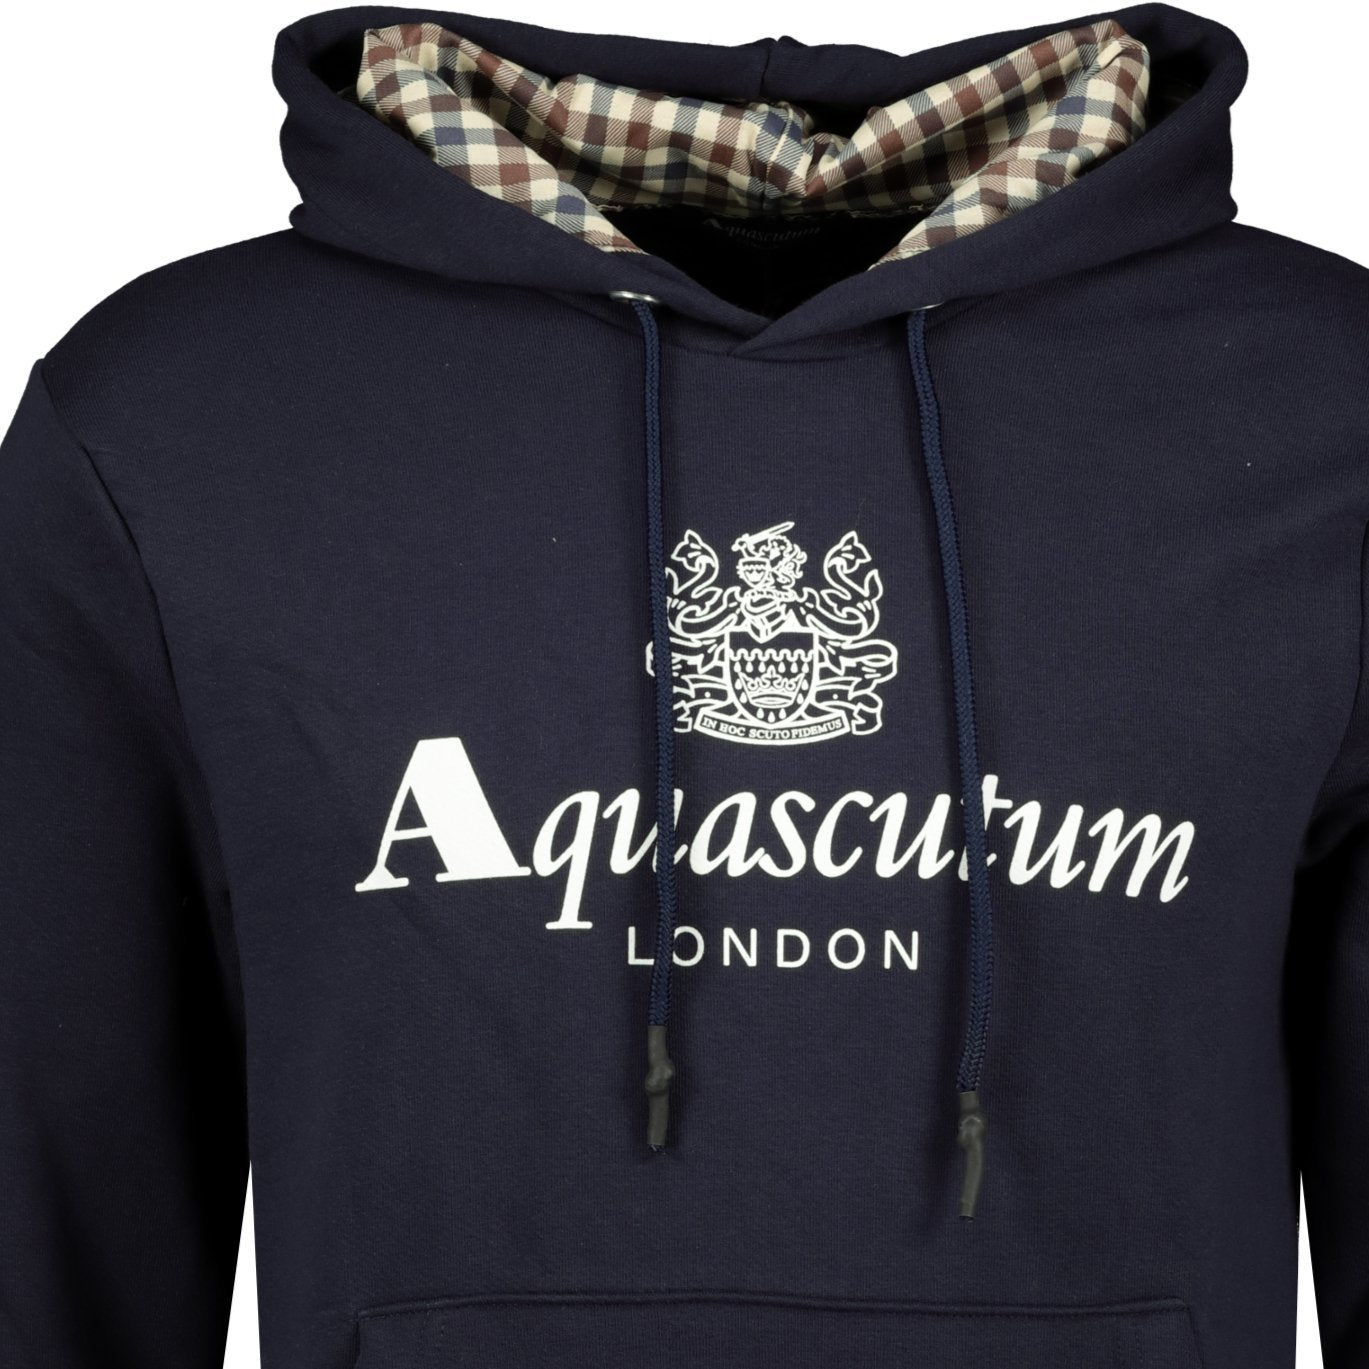 Aquascutum Check Hood Sweatshirt Navy - LinkFashionco